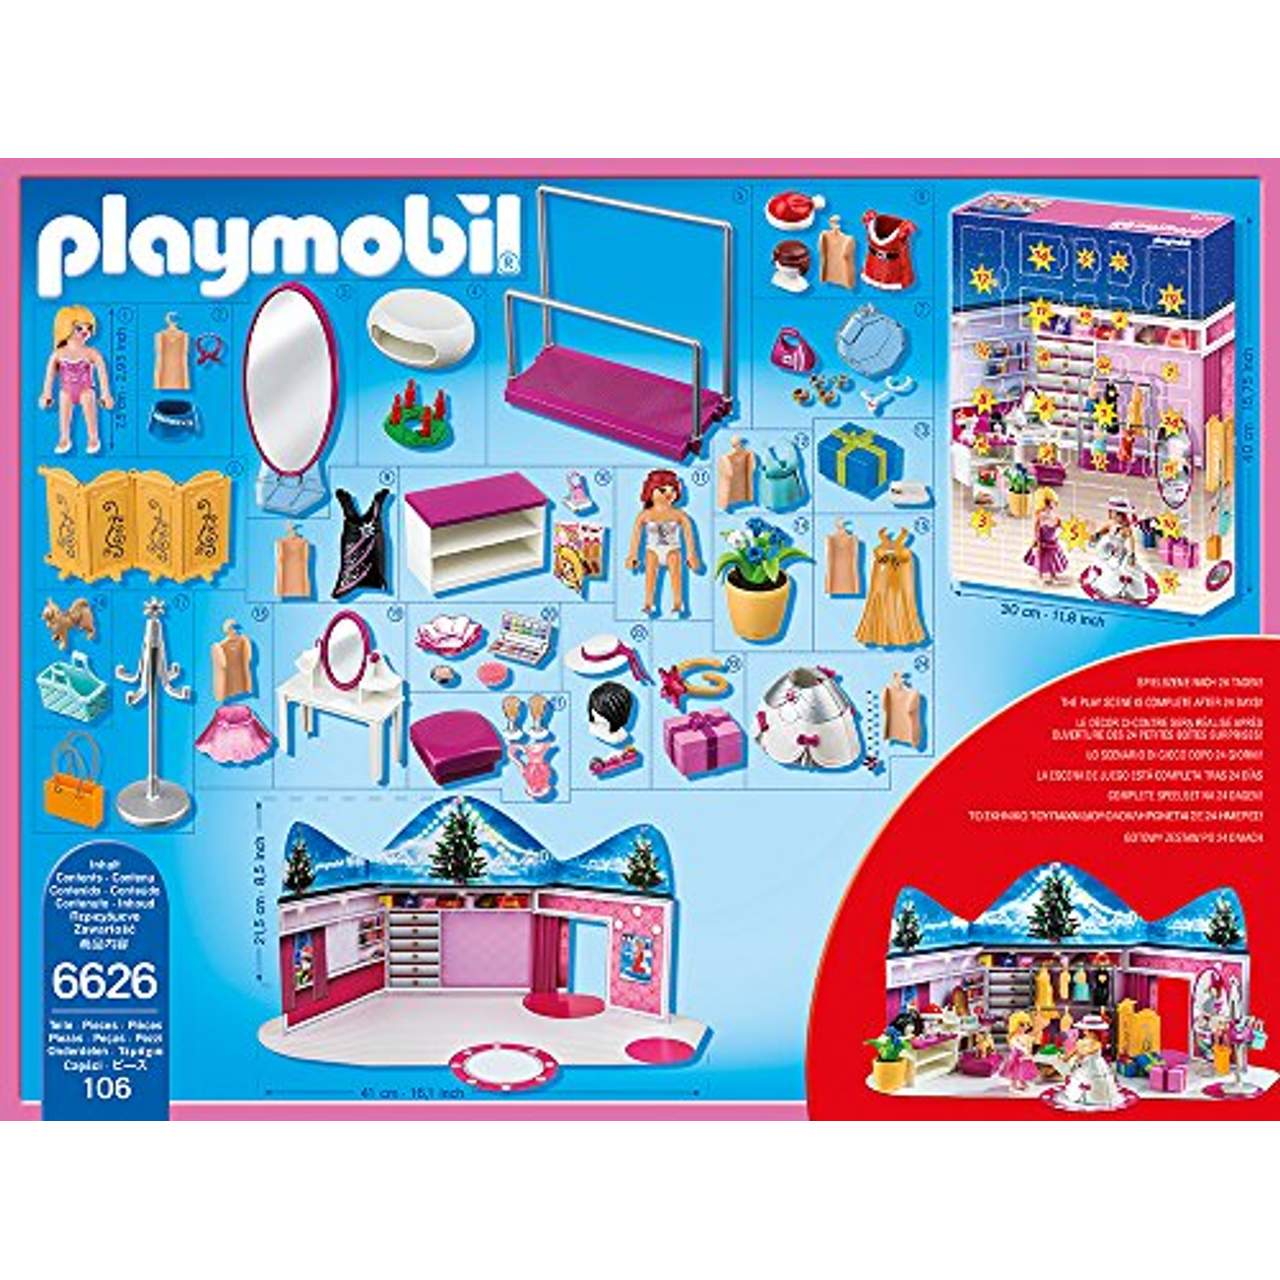 Playmobil 6626 Adventskalender Ankleidespaß